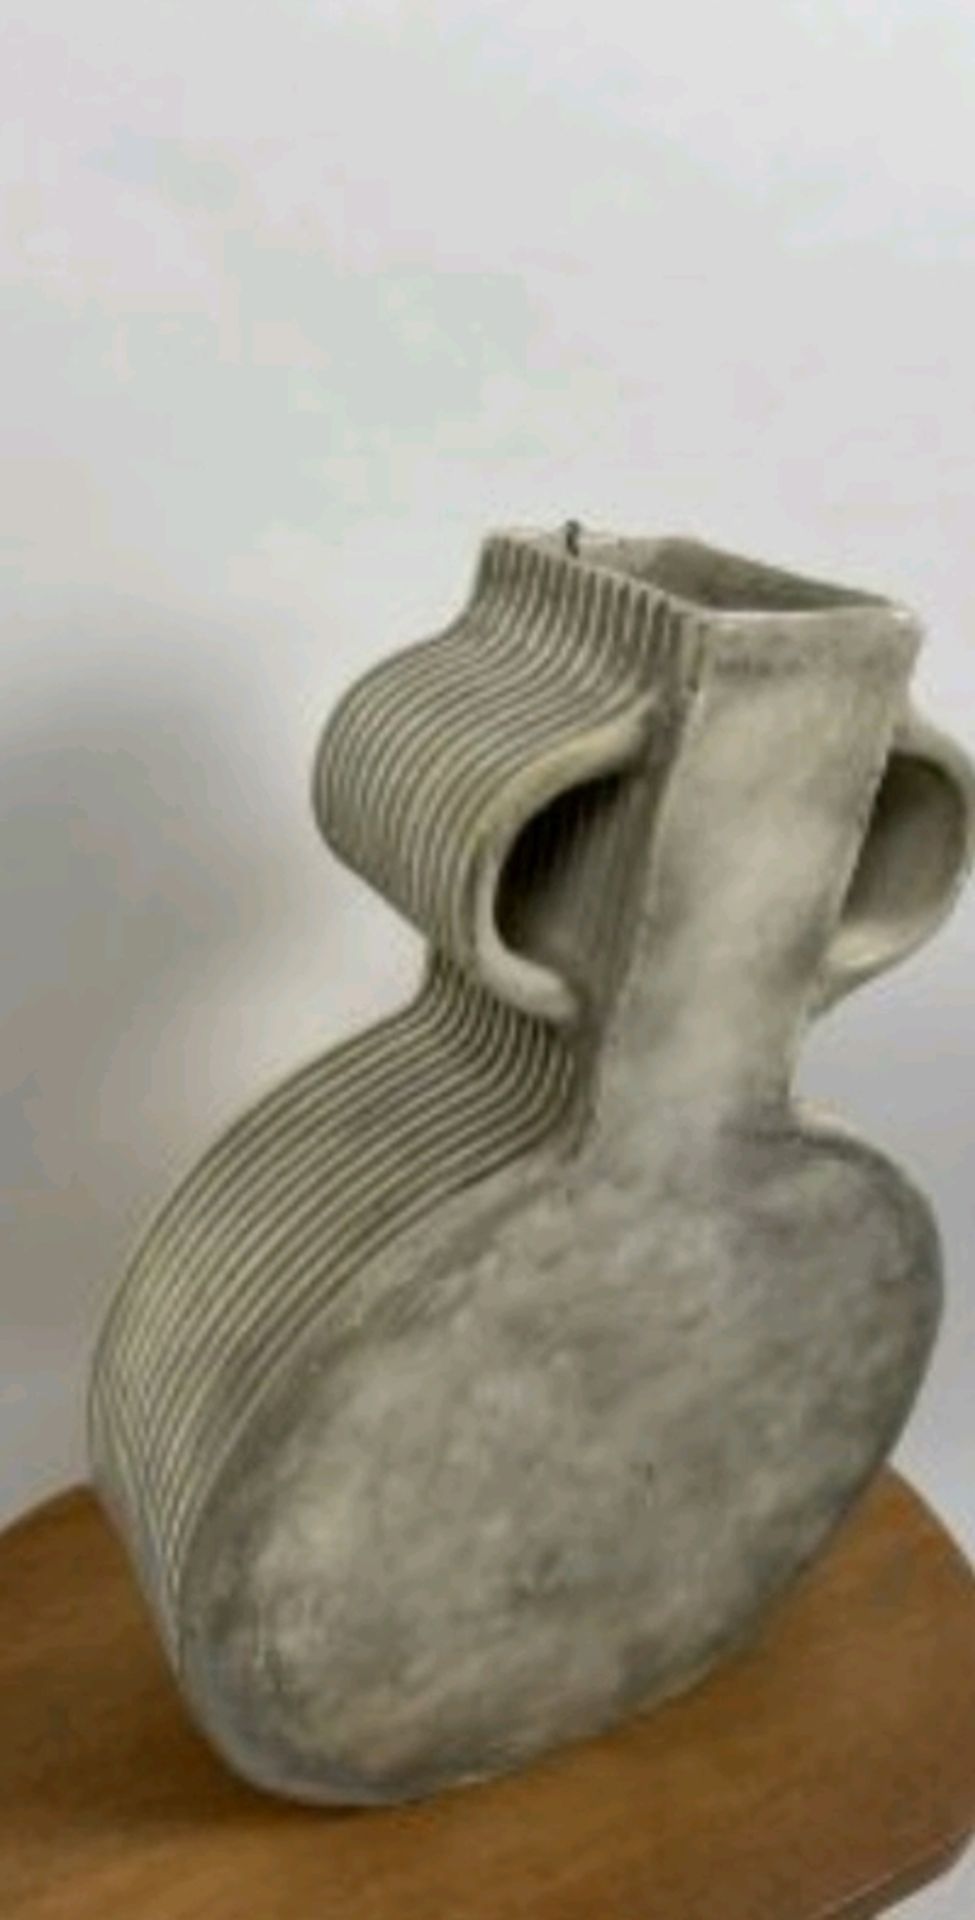 Global Explorer Round Faded White Wash Vase - Image 4 of 4